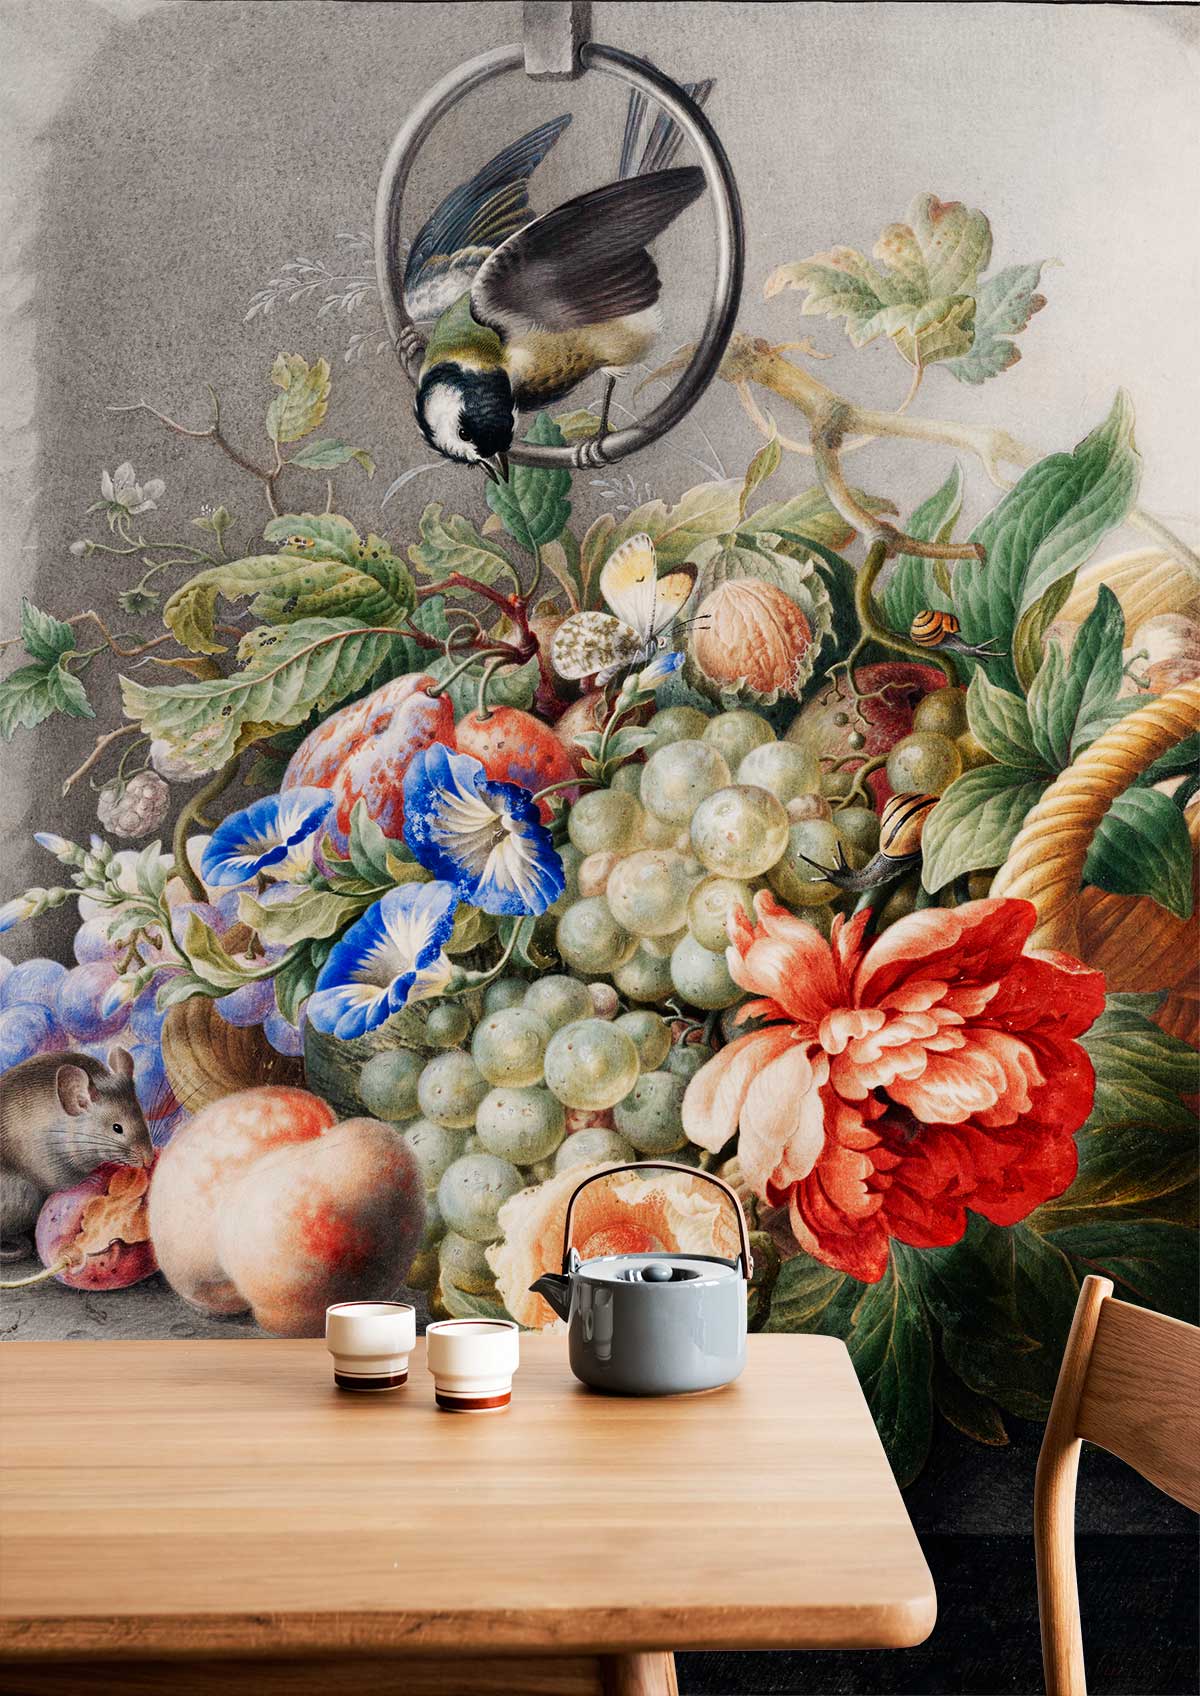 Flowers & Fruites Wallpaper Decoration Idea